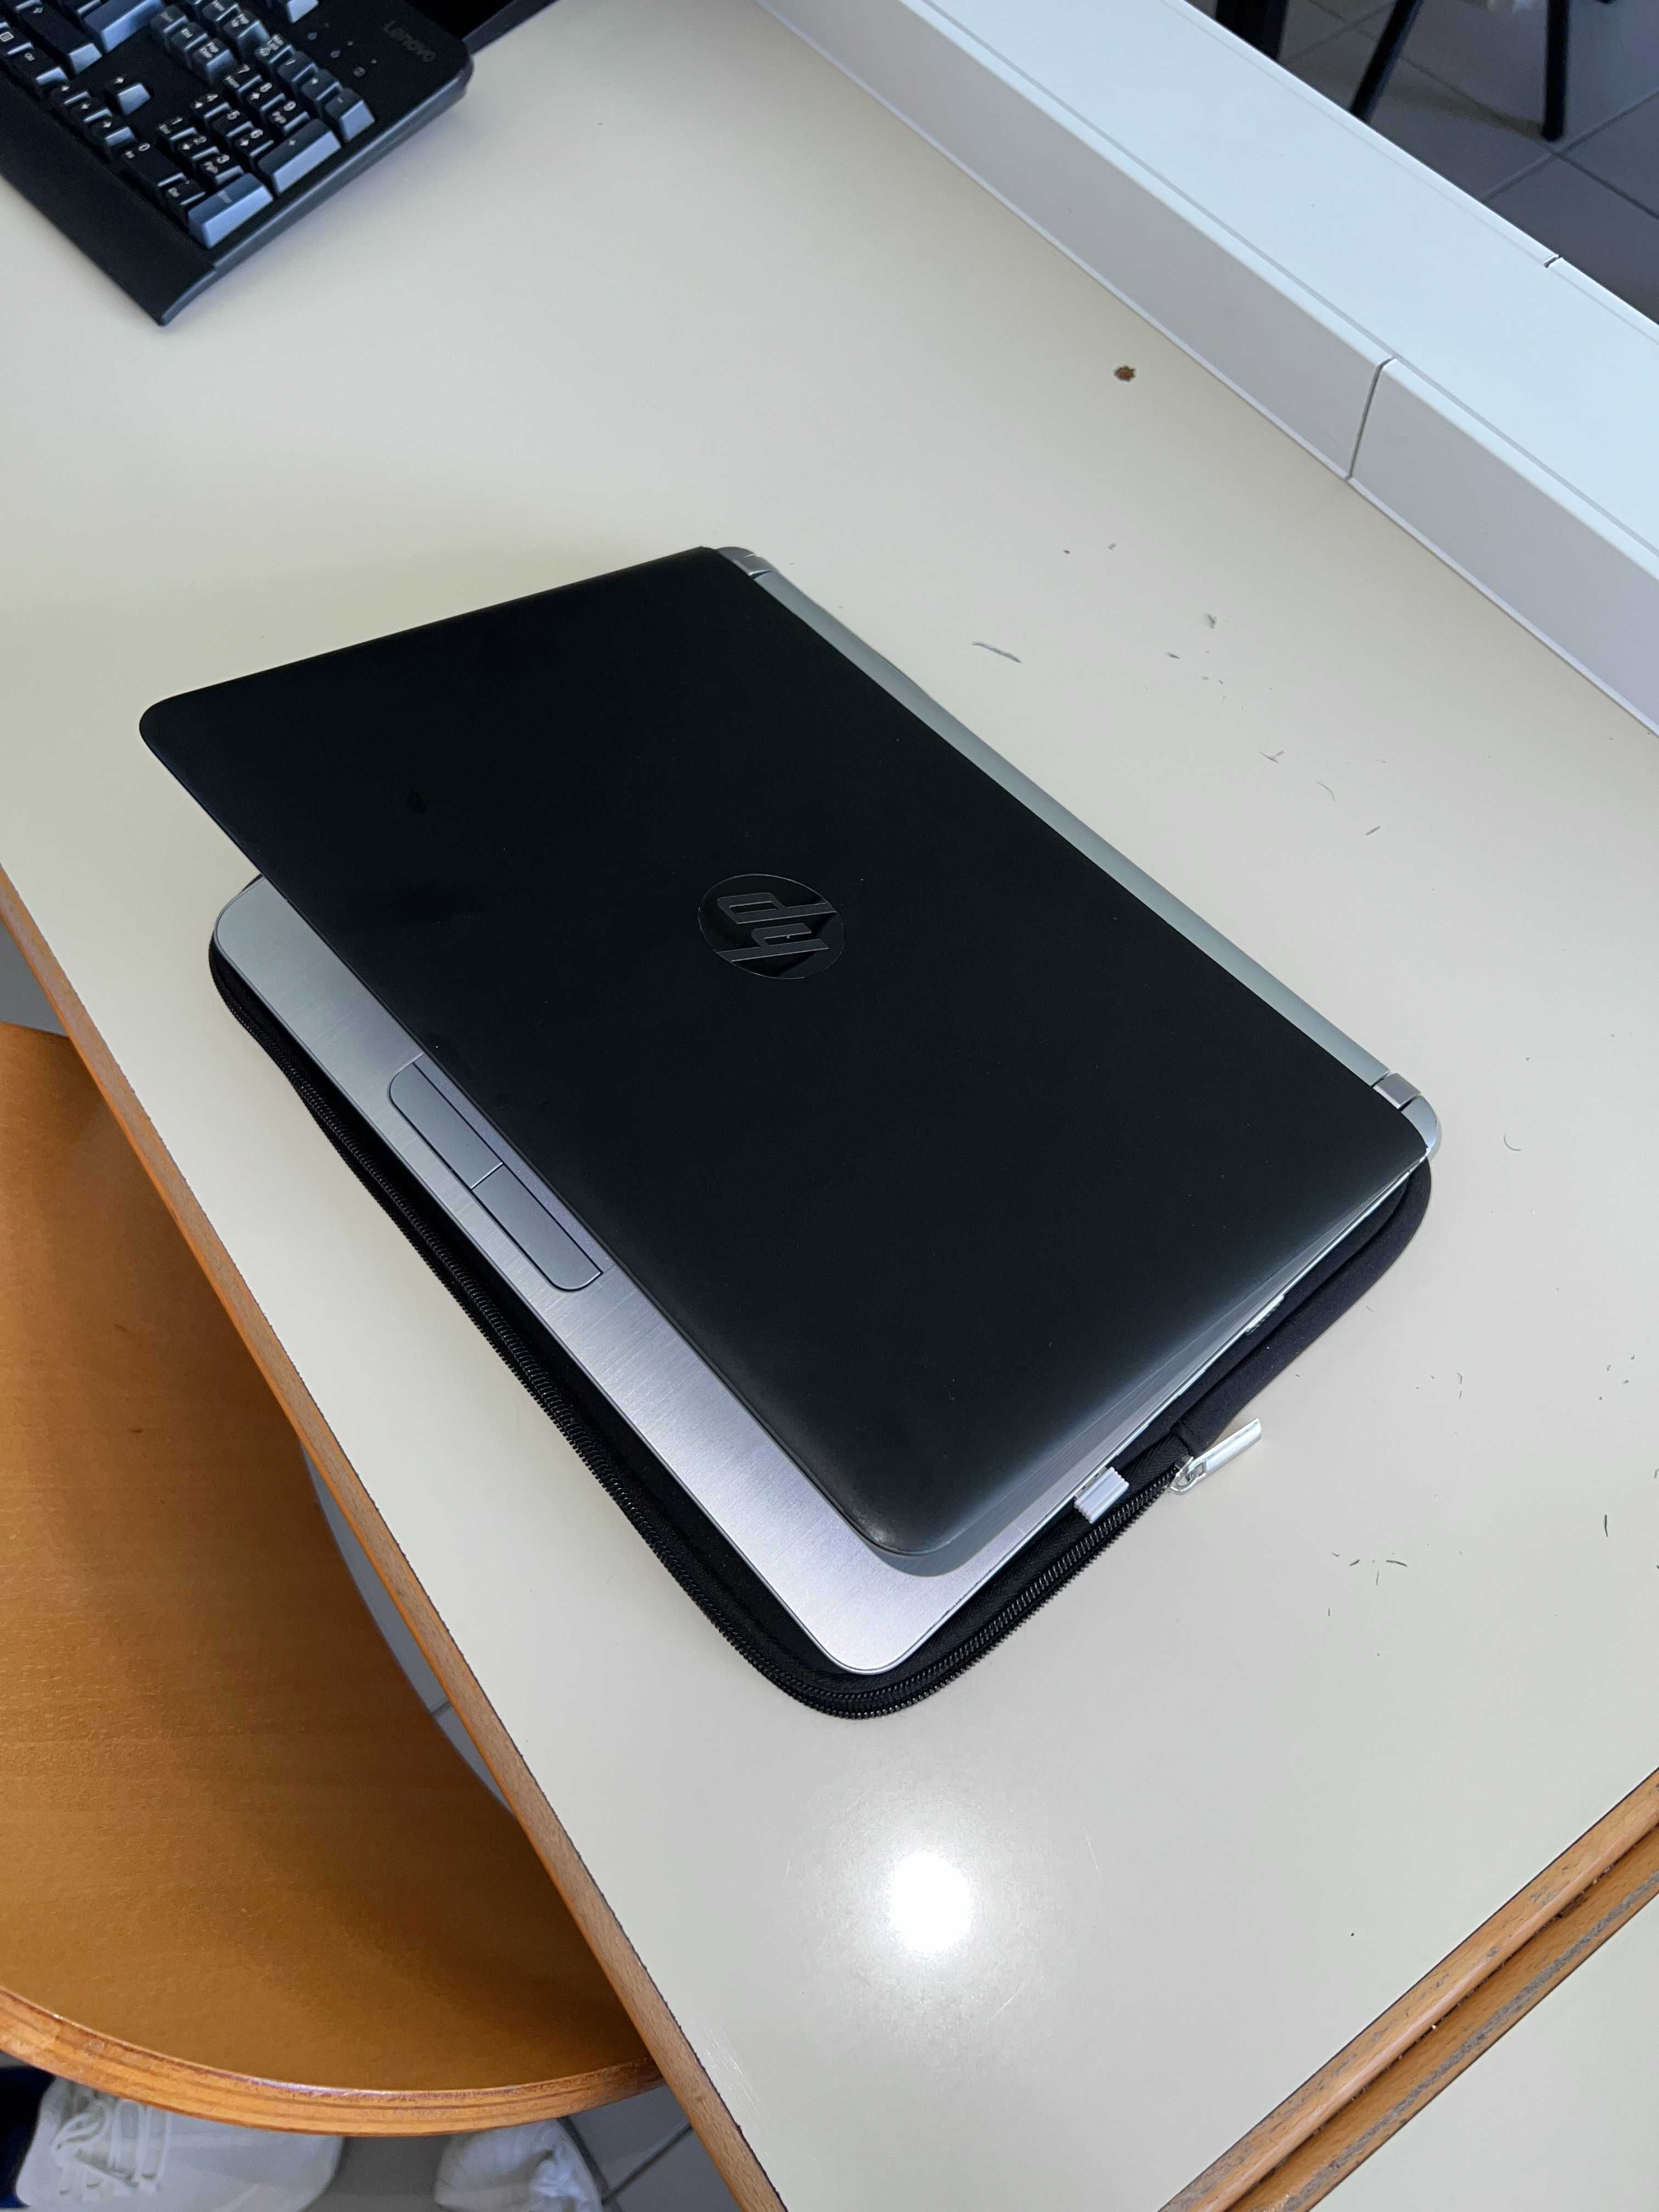 Portátil HP EliteBook 430 G3, Leve e Prático. Adequado para uso diário